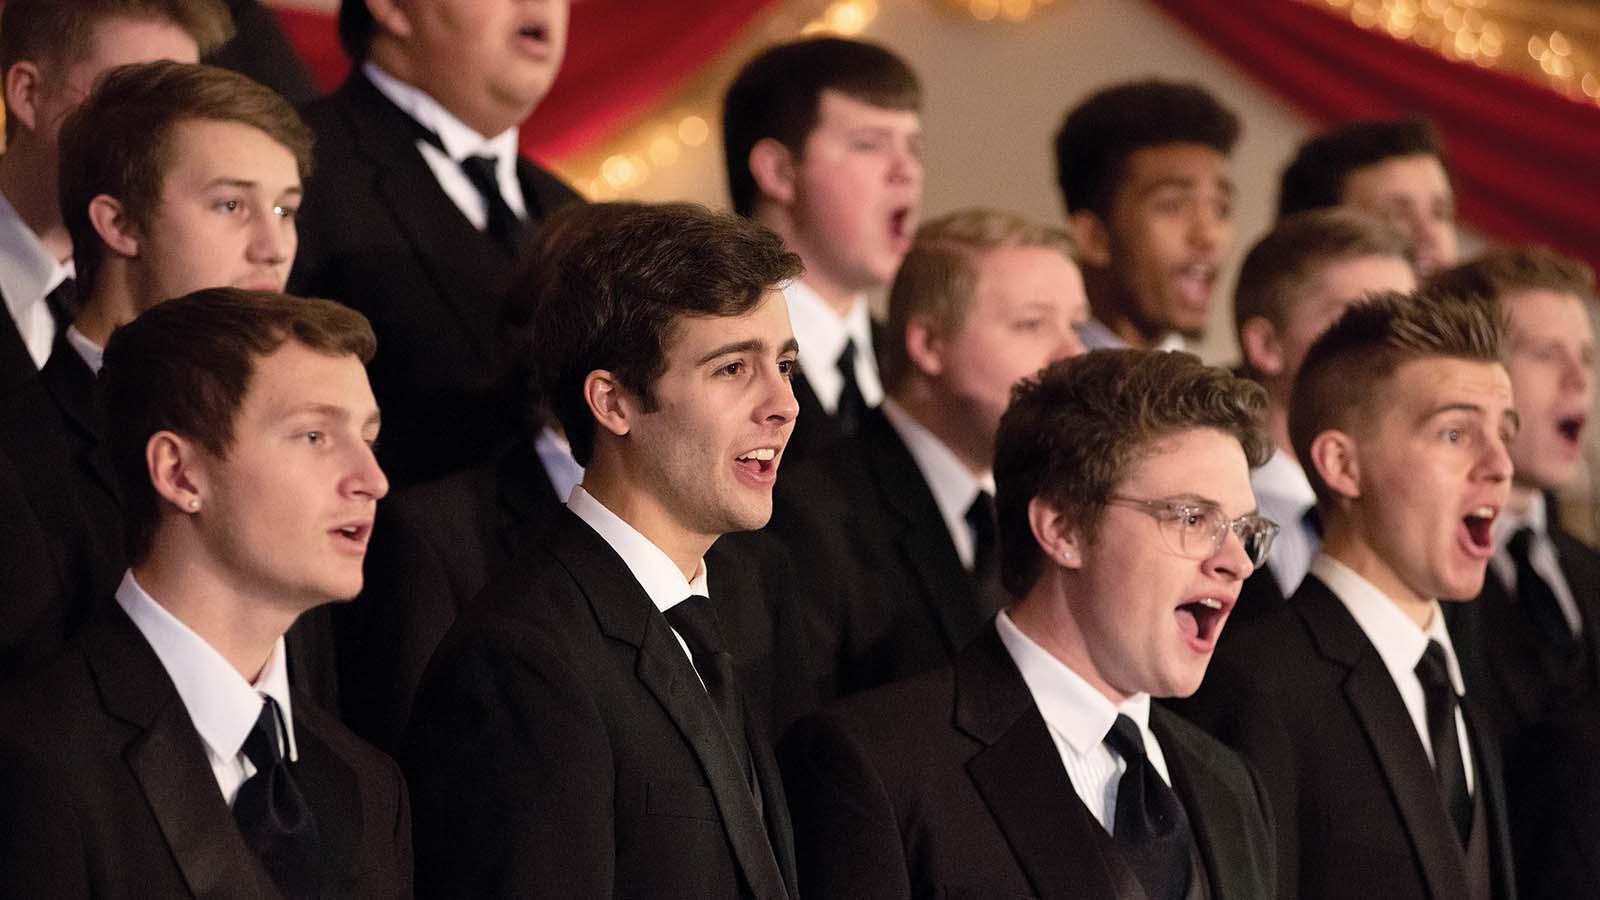 关闭up of men’s choir in tuxedos singing 